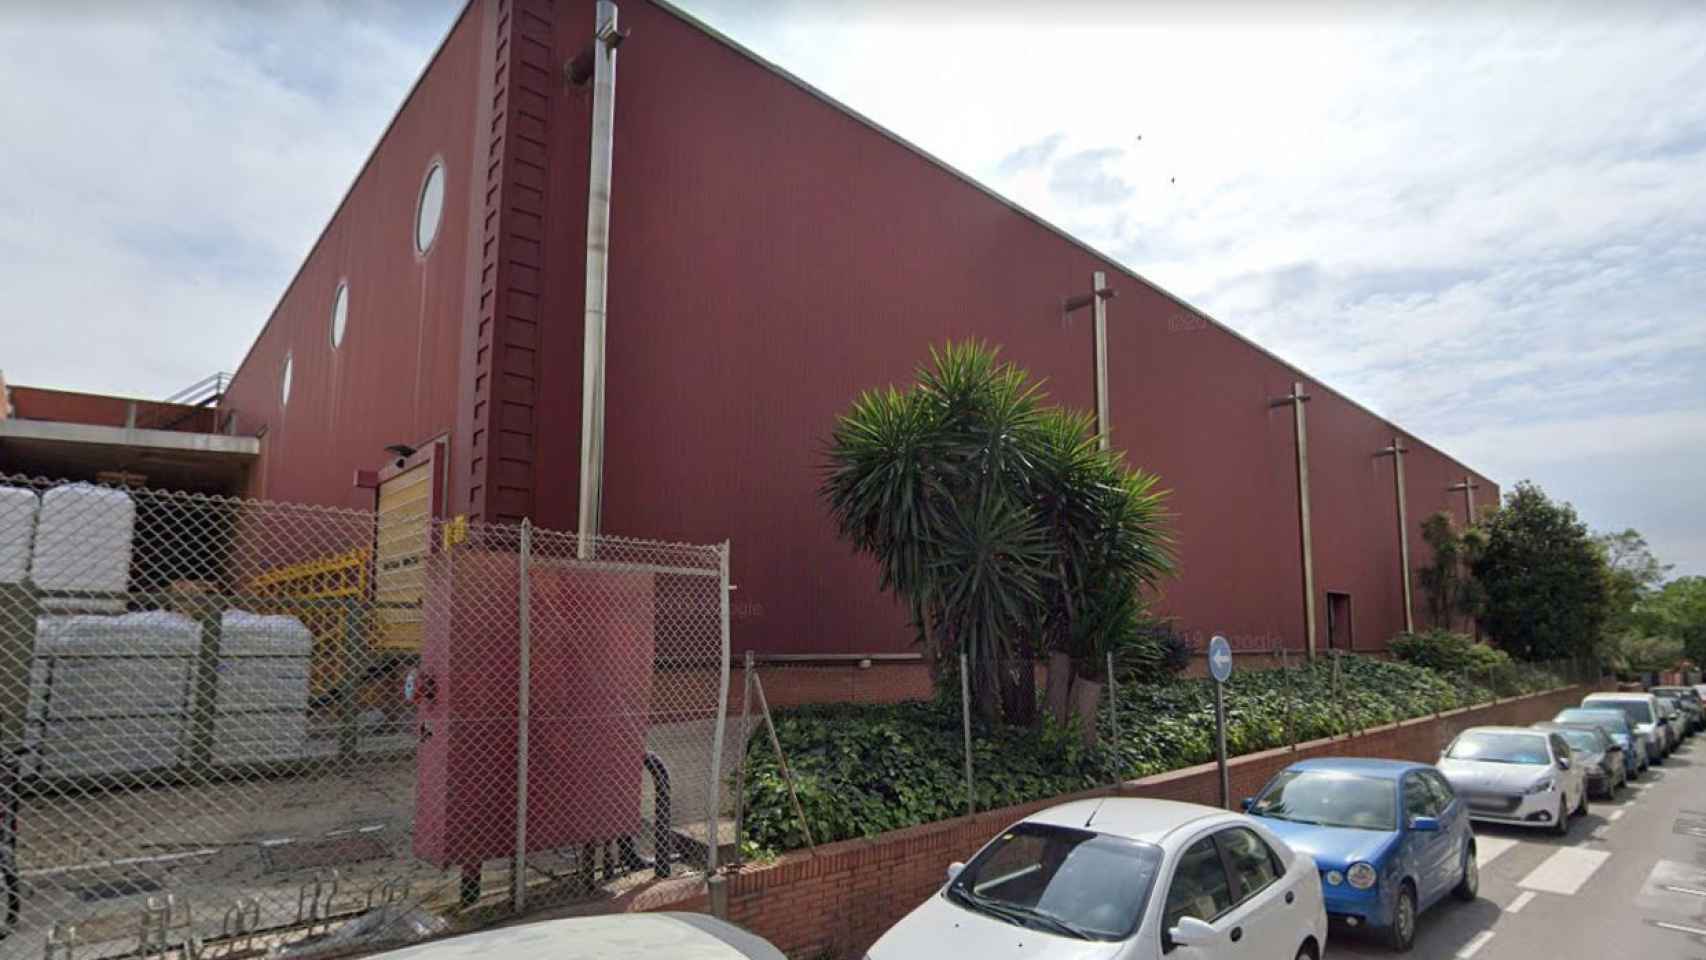 Fábrica y sede del millonario negocio de mallas para fruta y verdura Giró en Badalona / MA